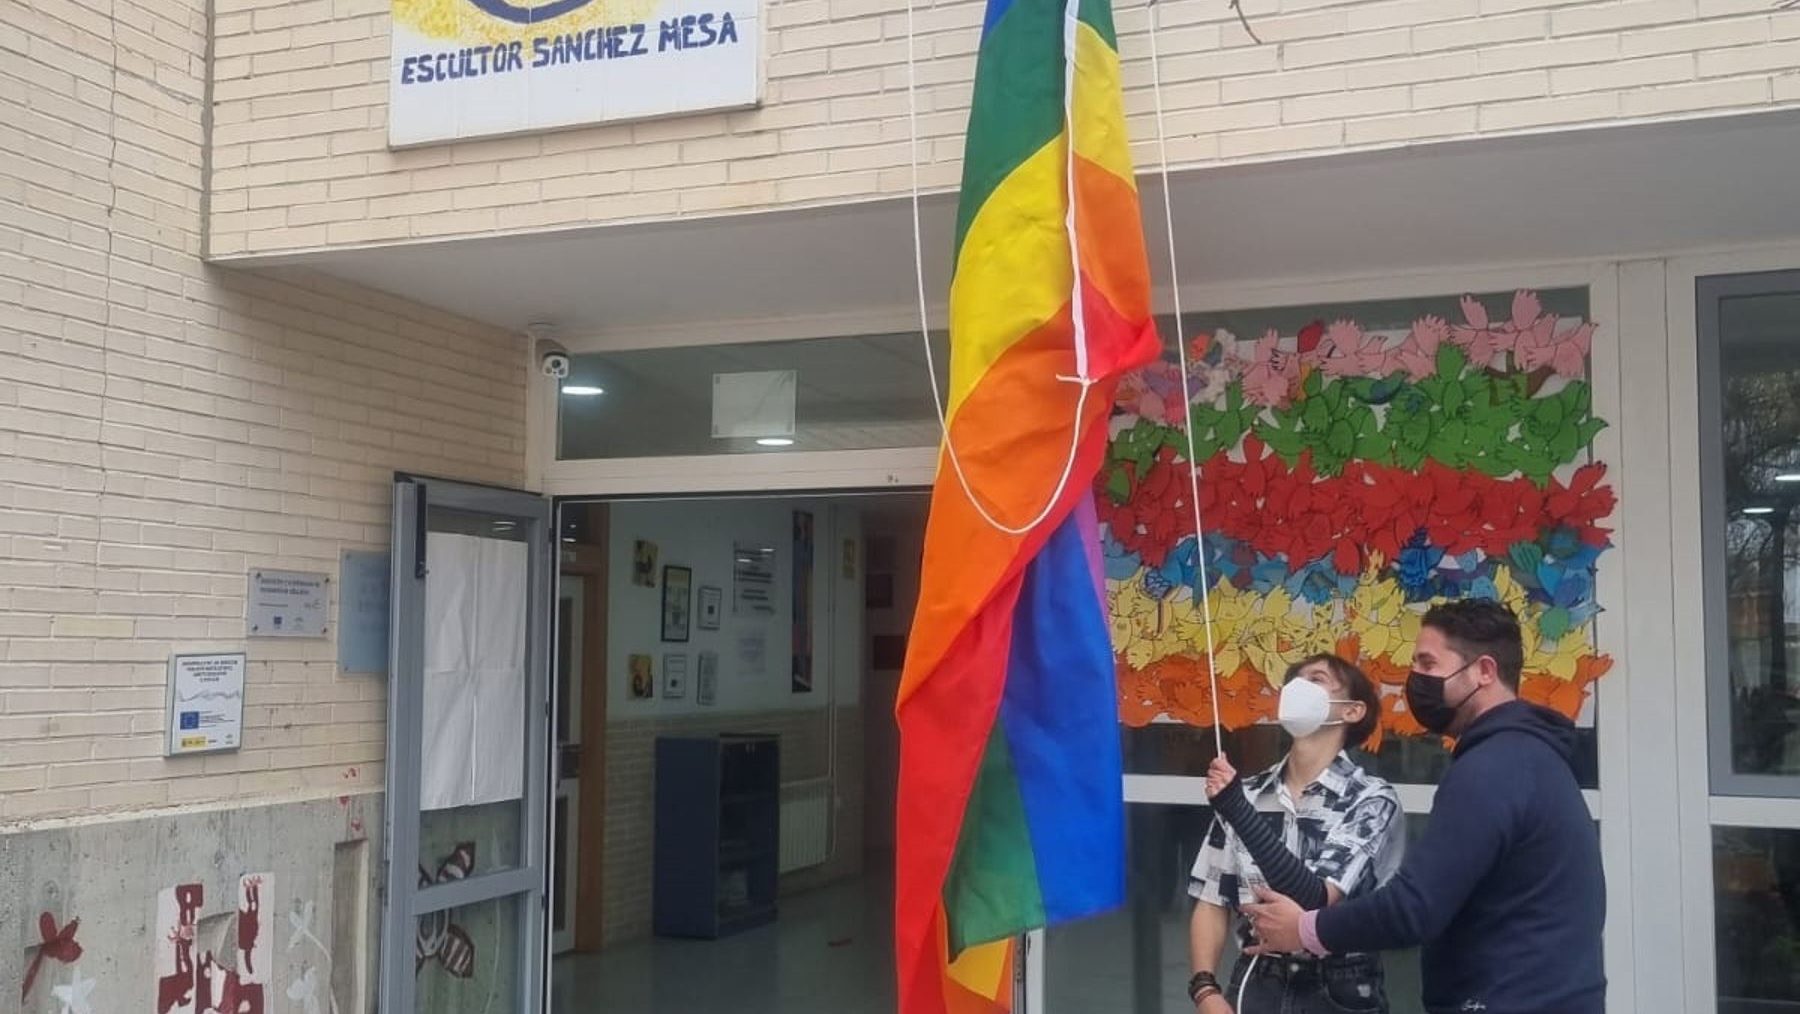 El IES Escultor Sánchez Mesa de Otura, primer instituto de Andalucía en izar la bandera LGTBI (AYUNTAMIENTO DE OTURA).